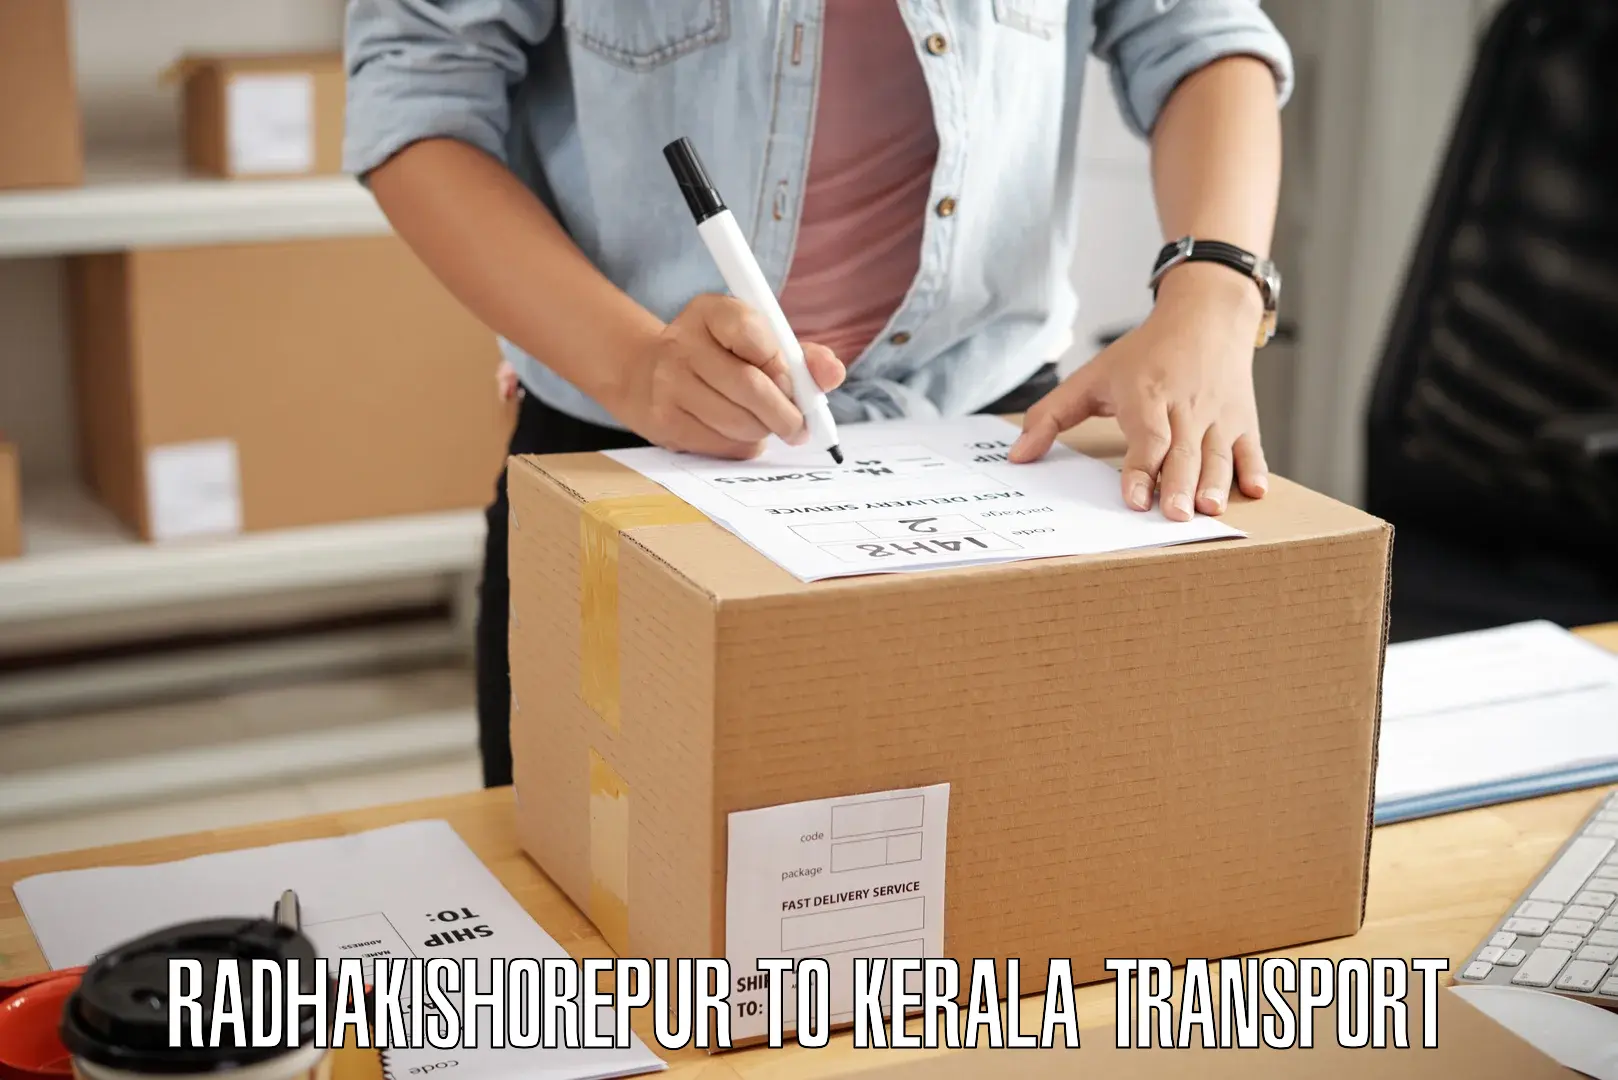 Online transport service Radhakishorepur to Kerala